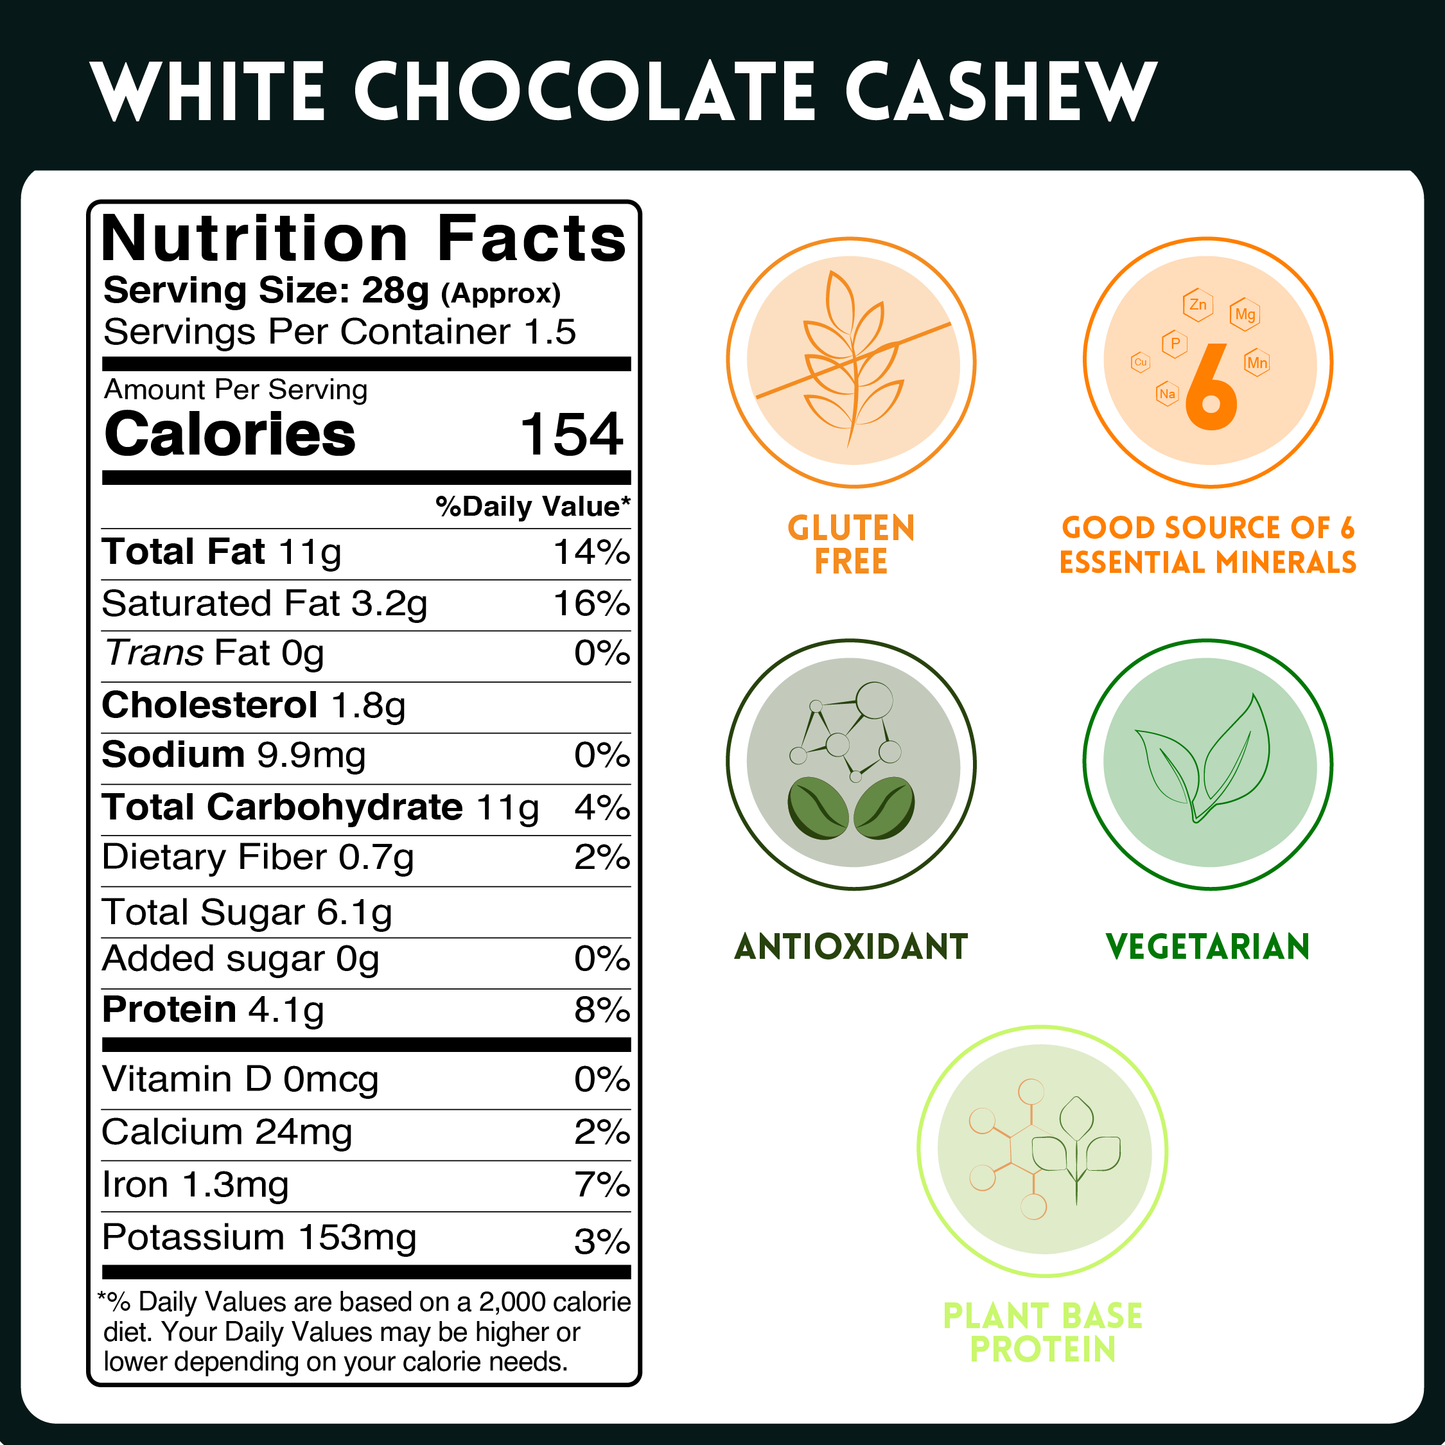 White Chocolate Cashews